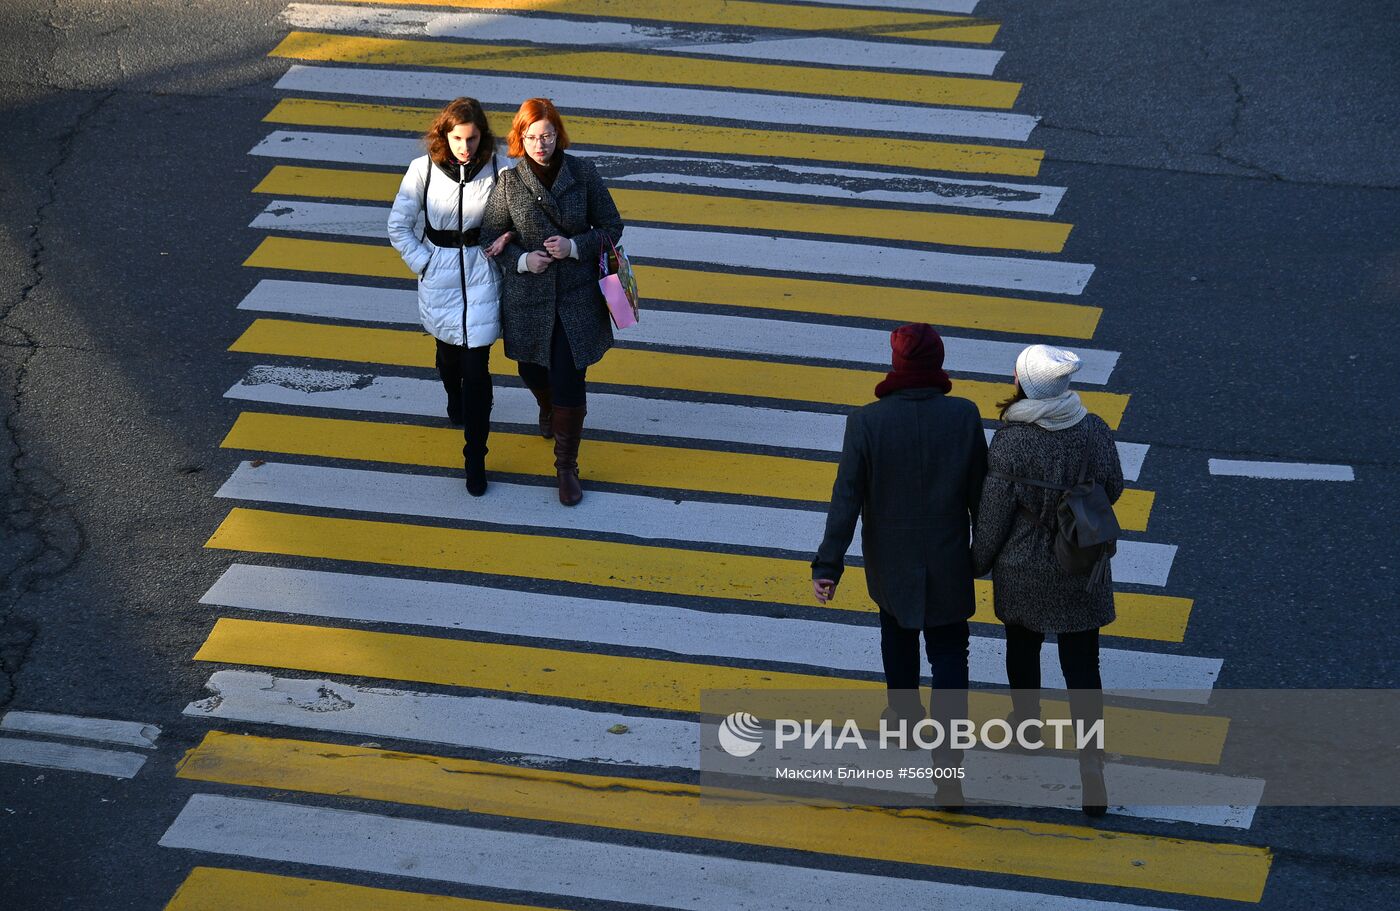 Дорожные знаки и разметка на московских дорогах